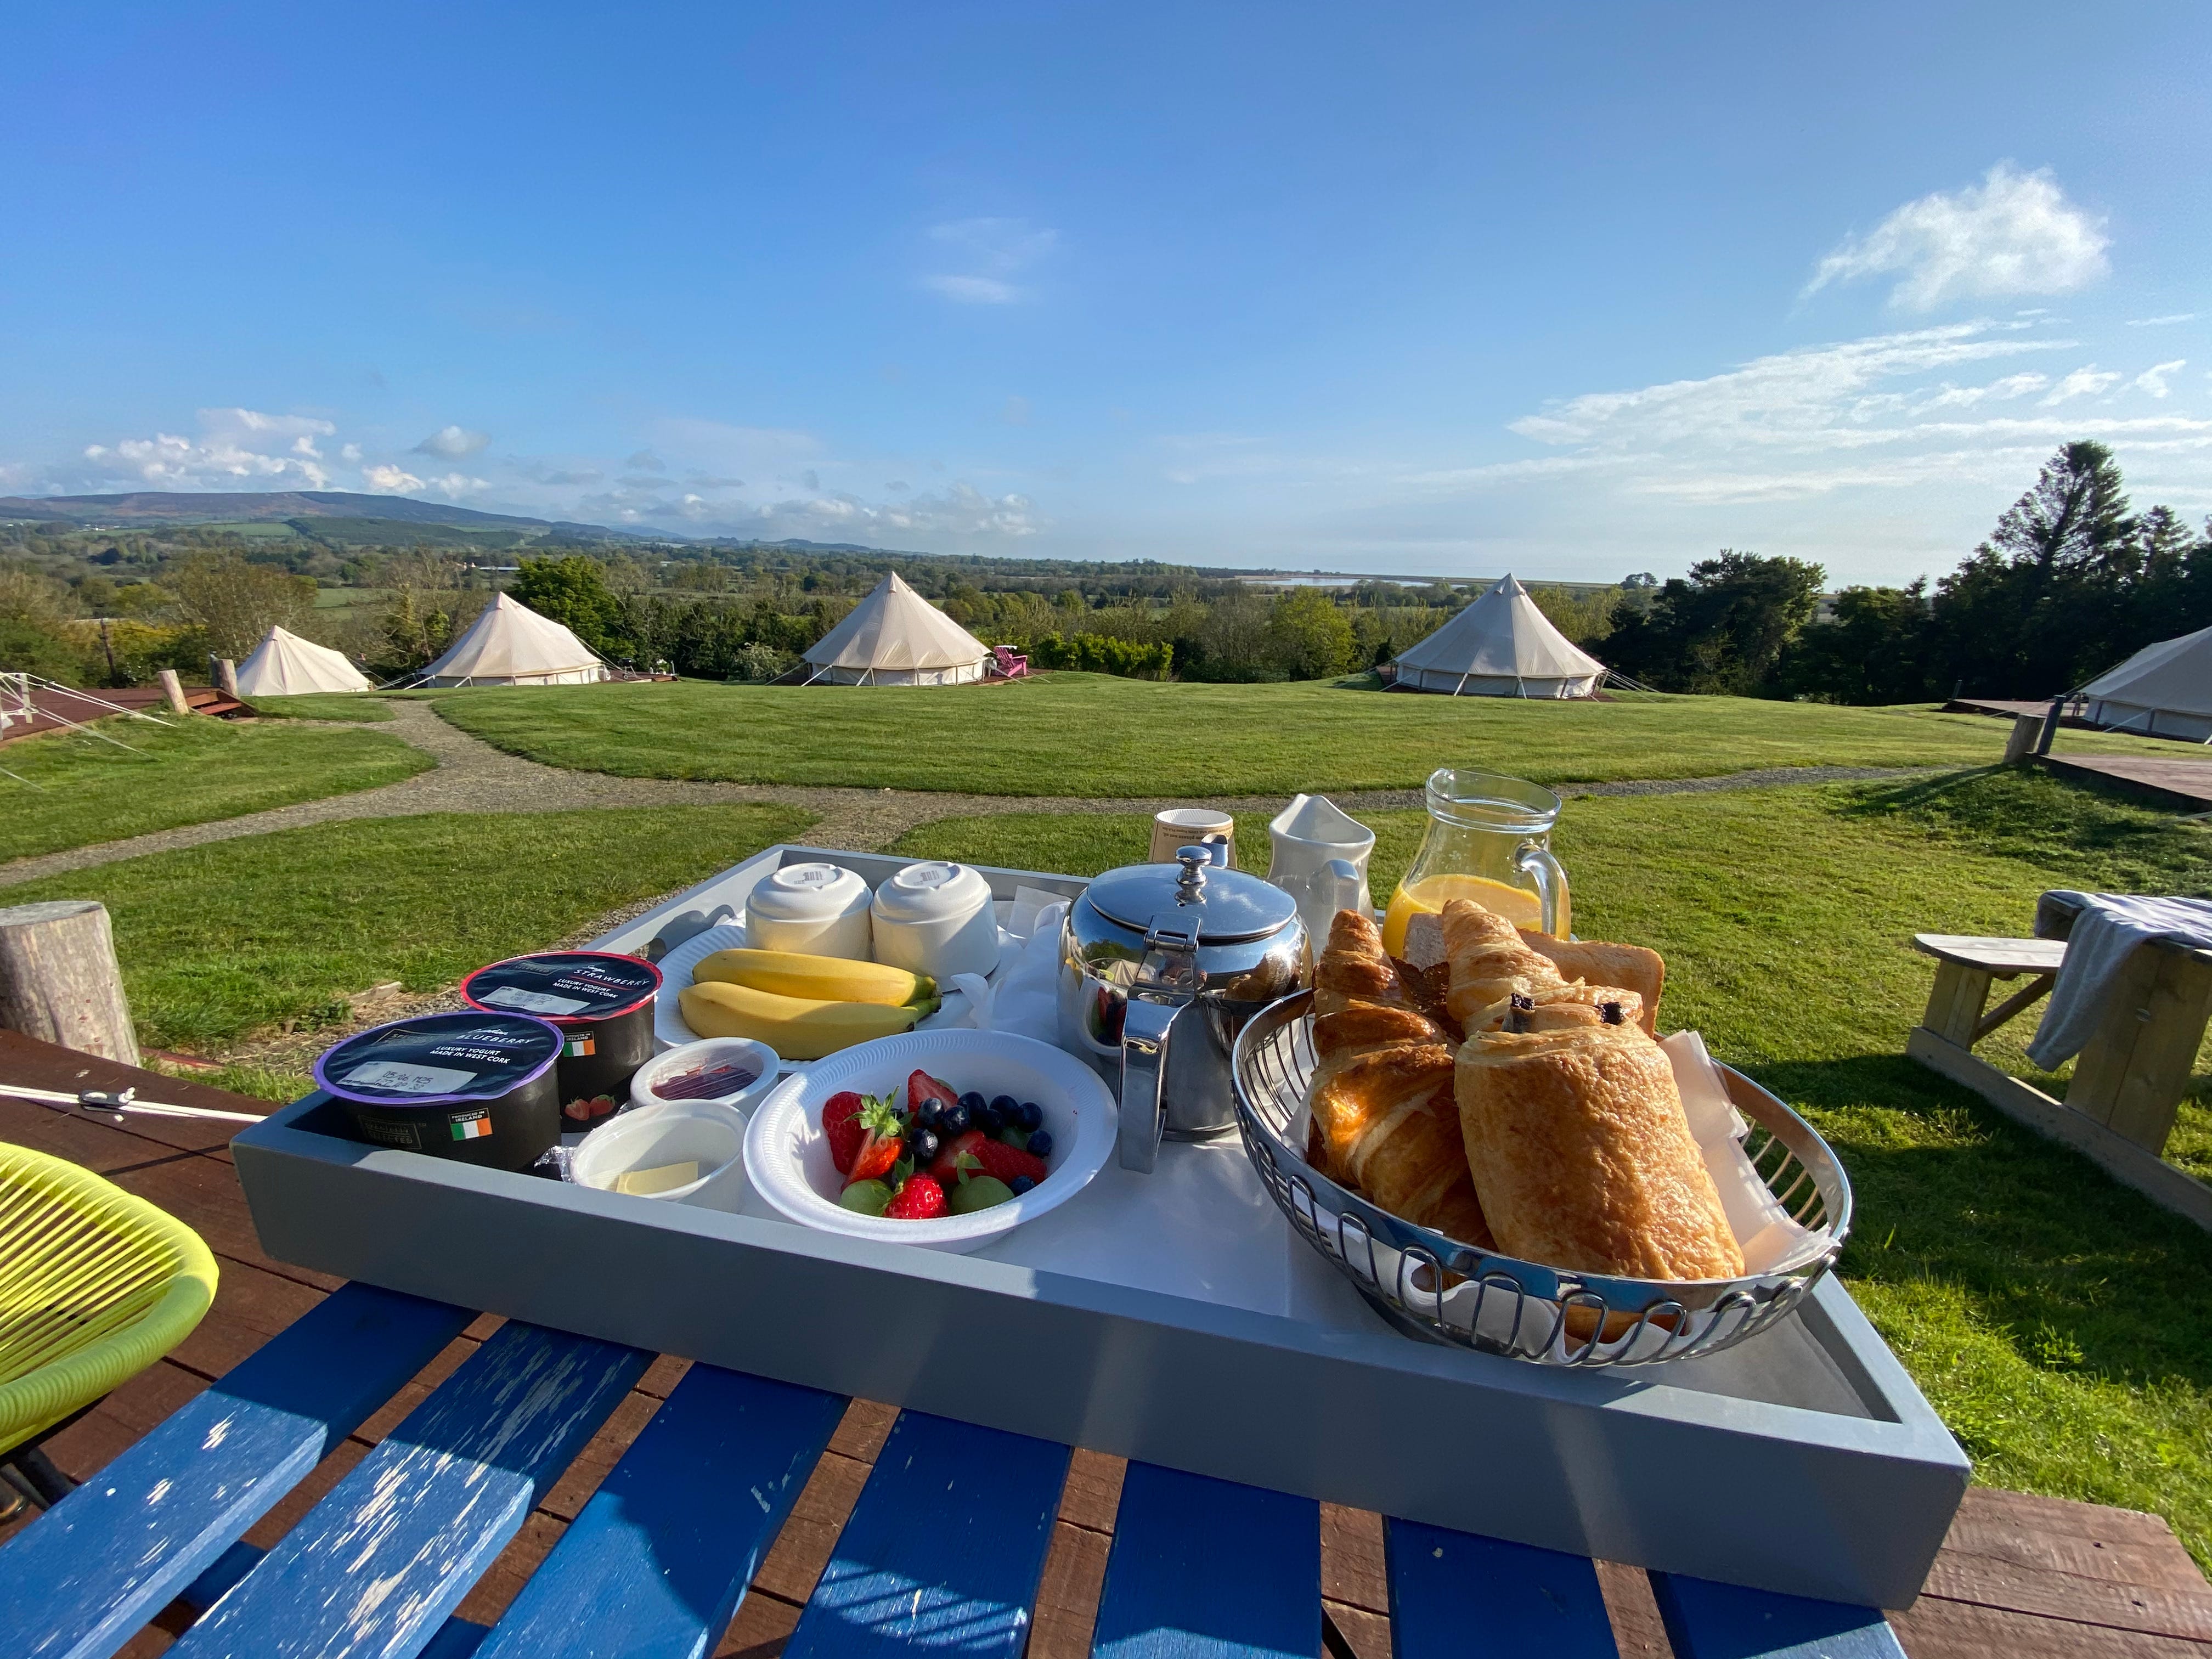 Frühstückstablett mit Blick auf Zelte auf einem Campingausflug